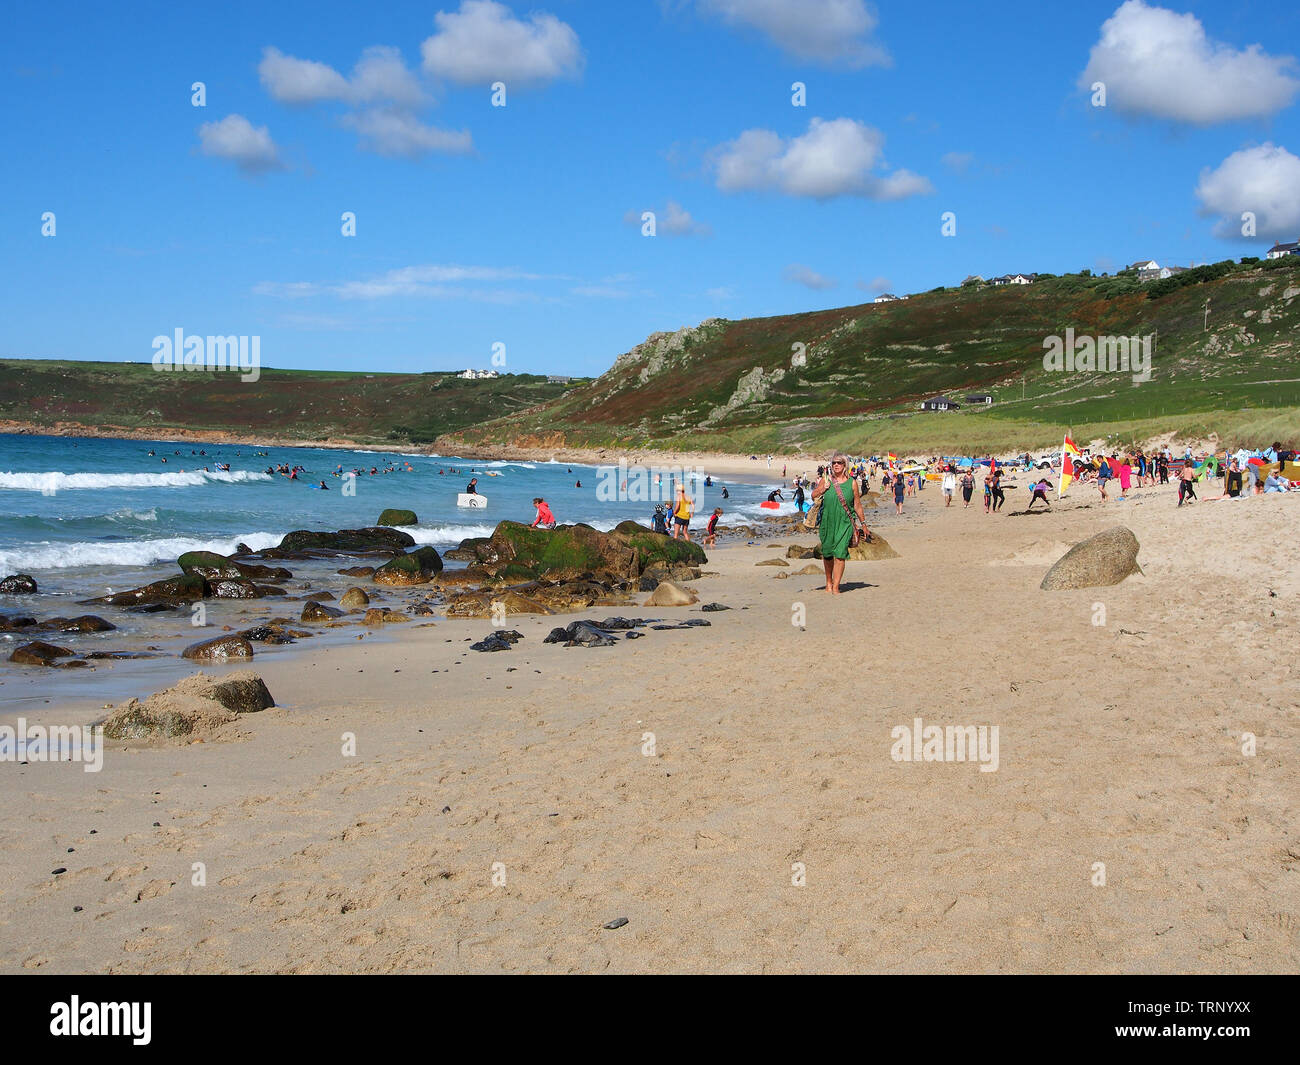 Les gens appréciant une journée d'été ensoleillée sur la plage de Sennen Cove, Cornwall, Angleterre, Royaume-Uni avec la plage de sable et la mer bleue sous un ciel bleu. Banque D'Images